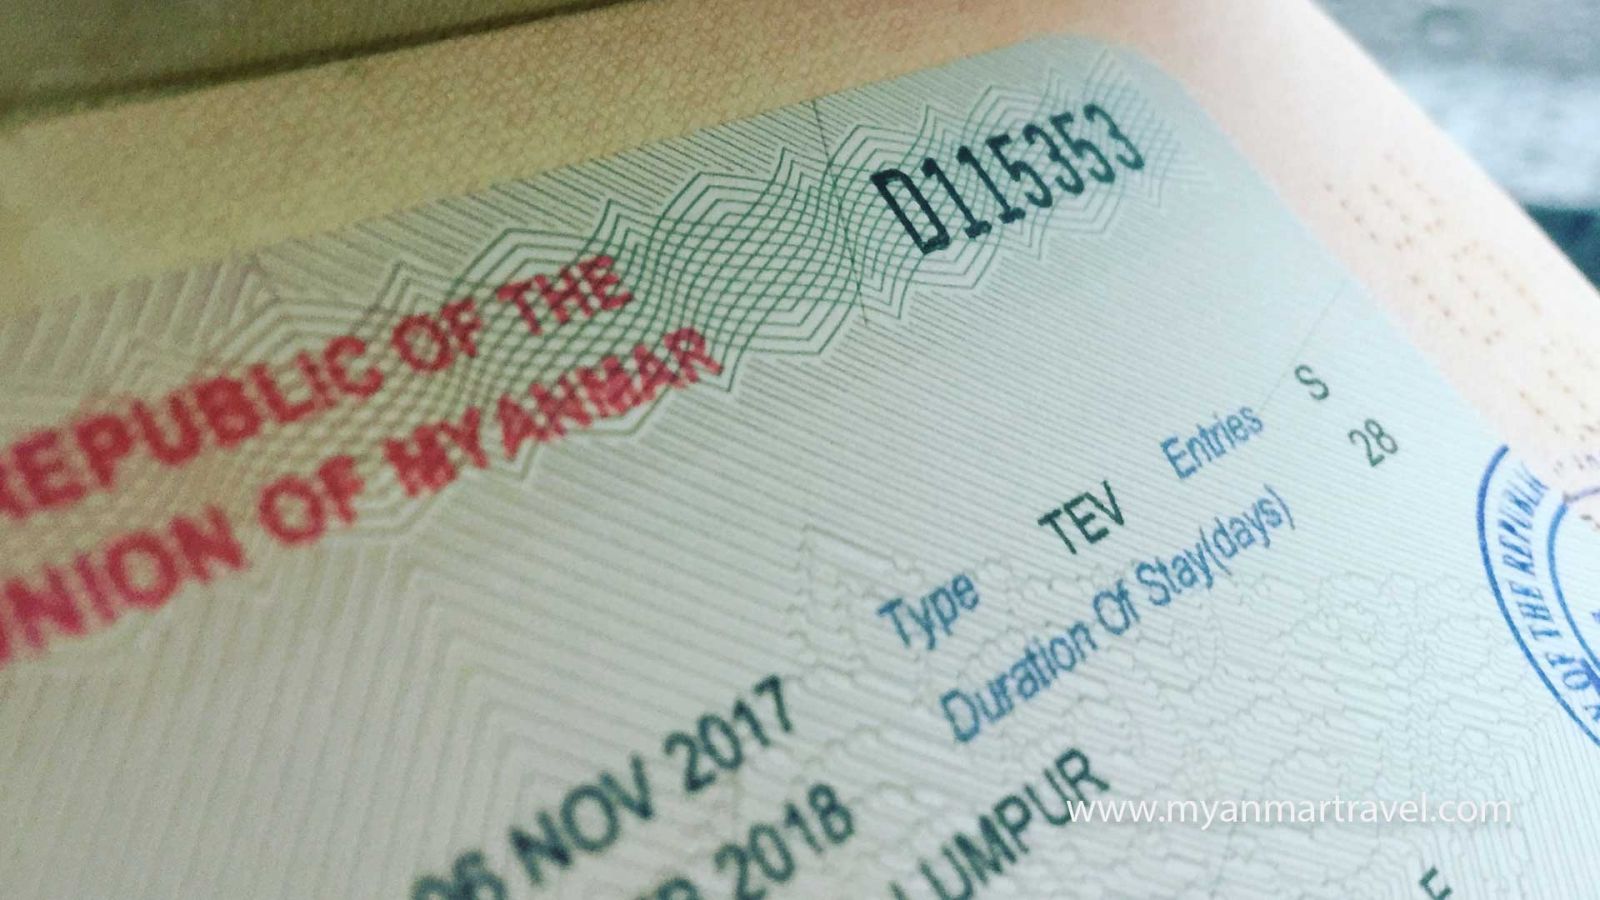 hồ sơ xin visa du lịch myanmar